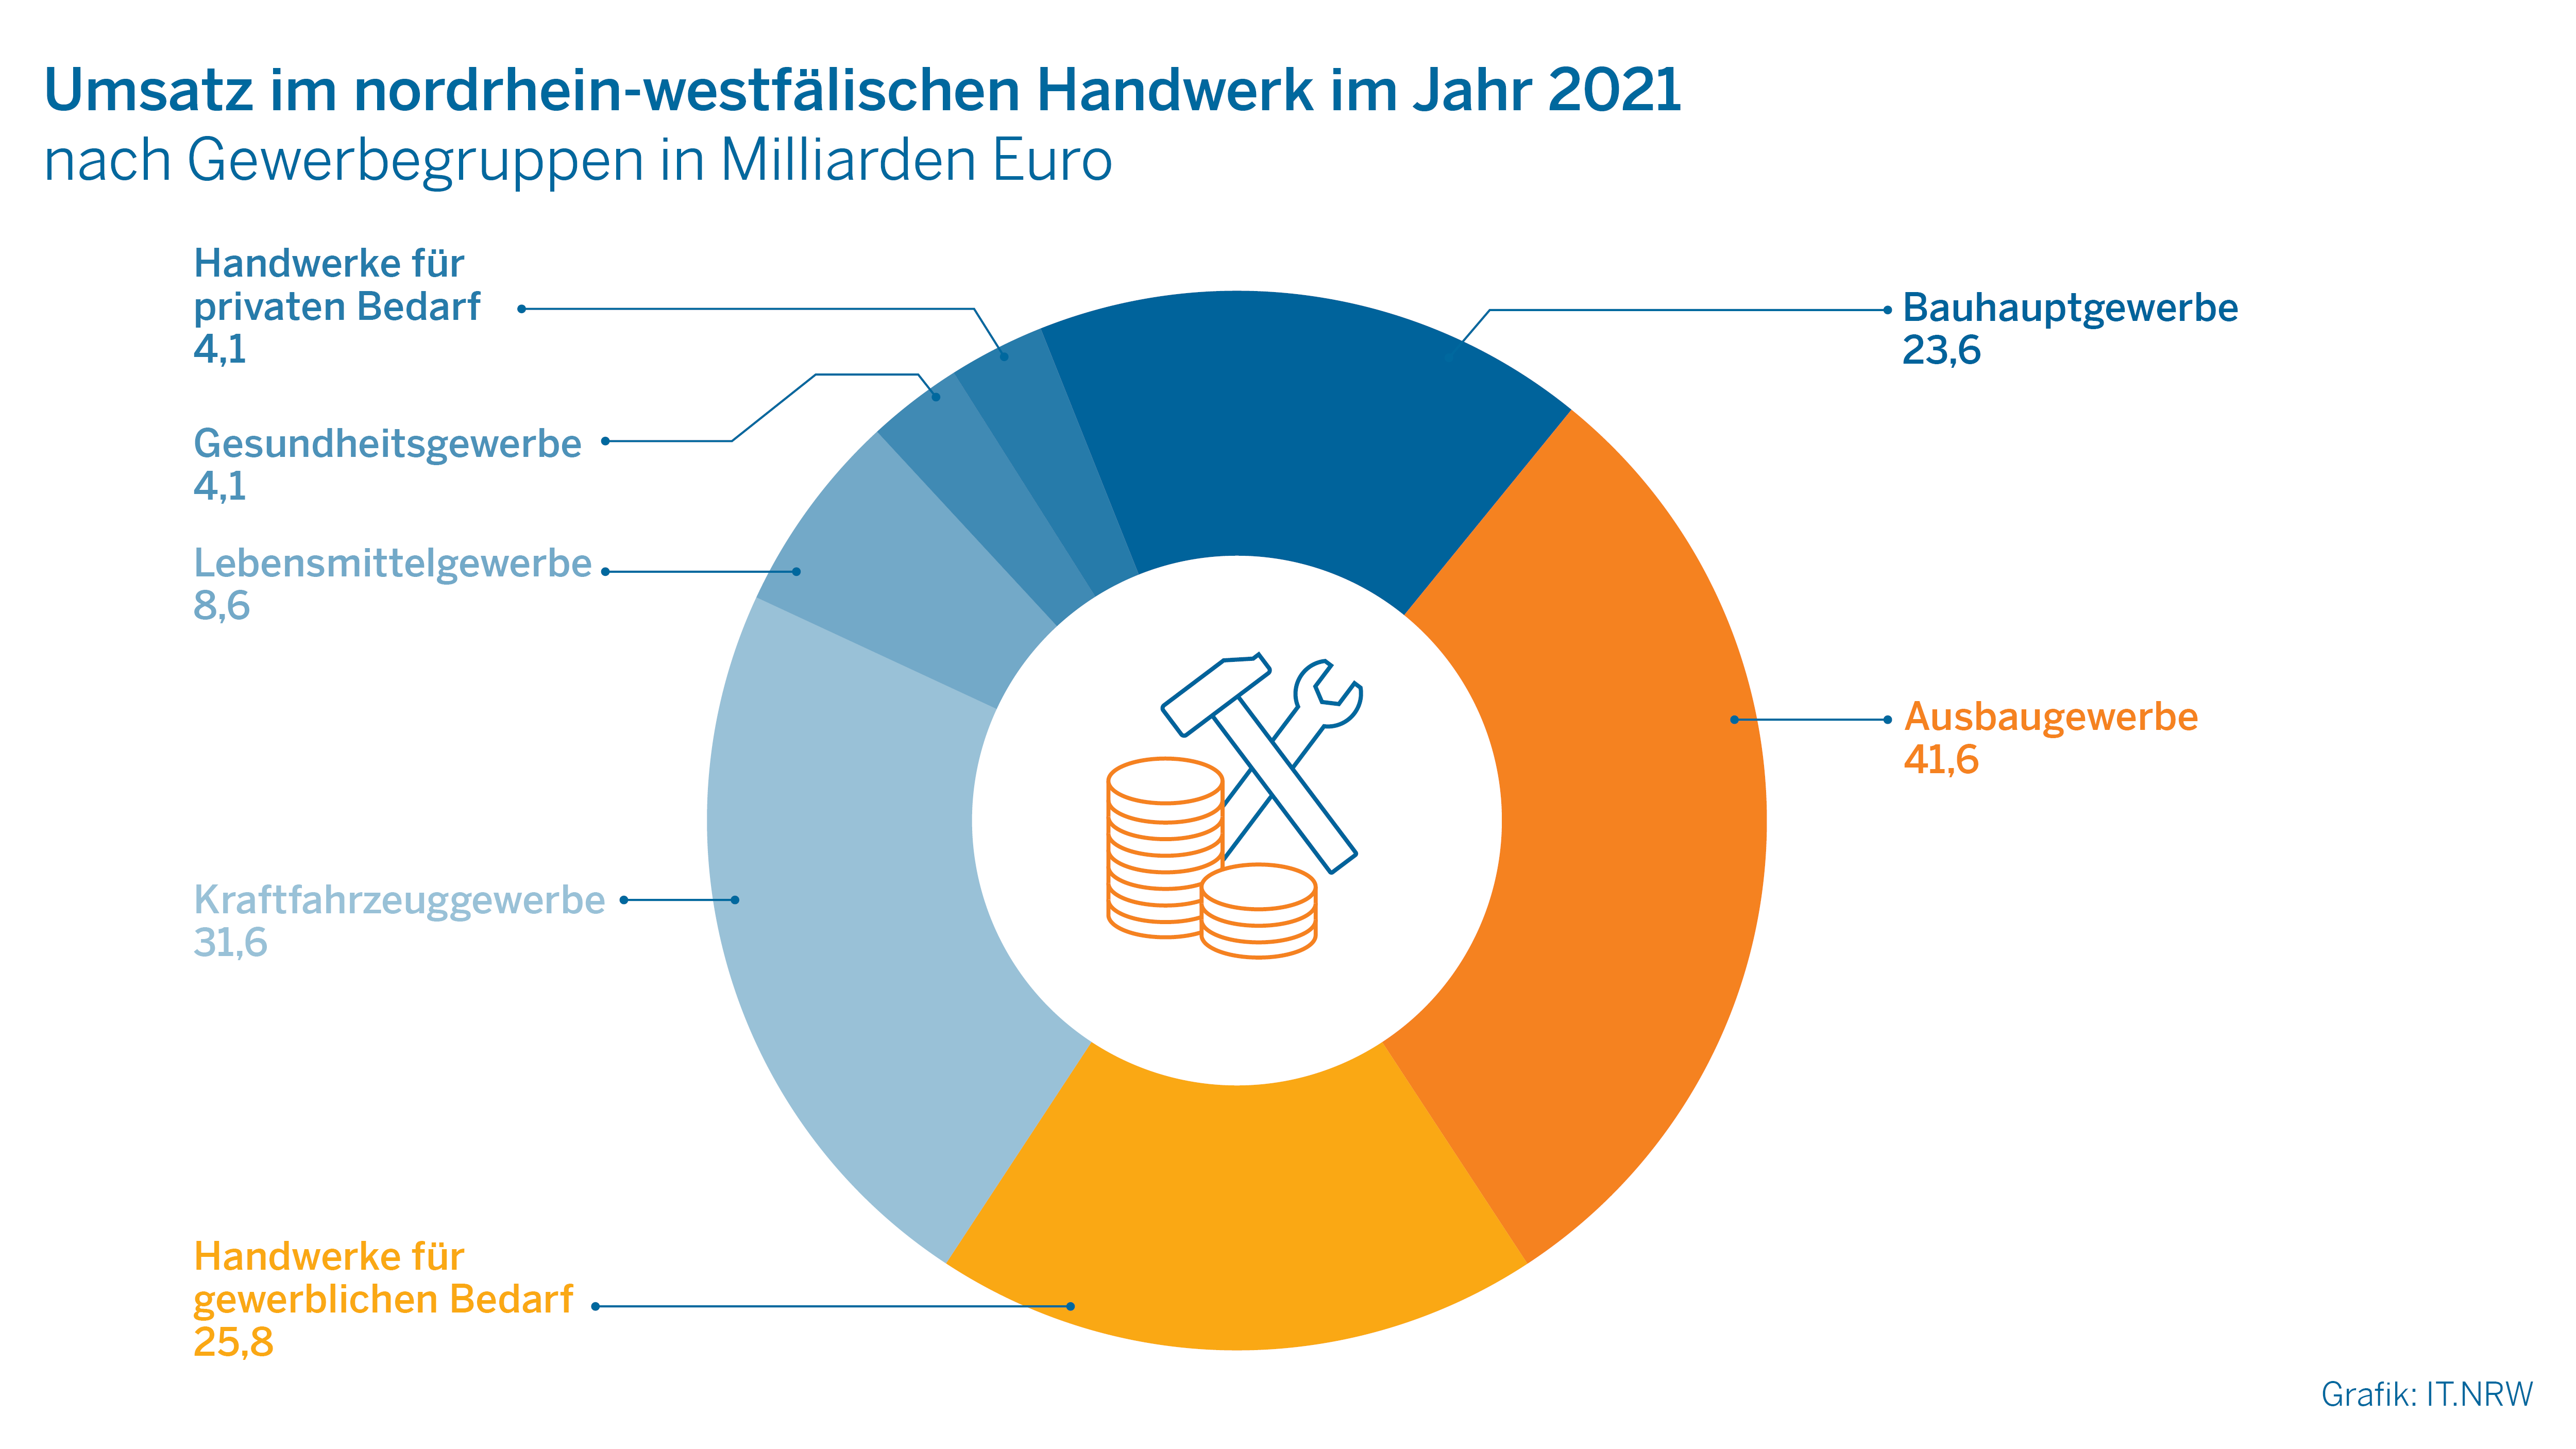 Umsatz im nordrhein-westfälischen Handwerk im Jahr 2021